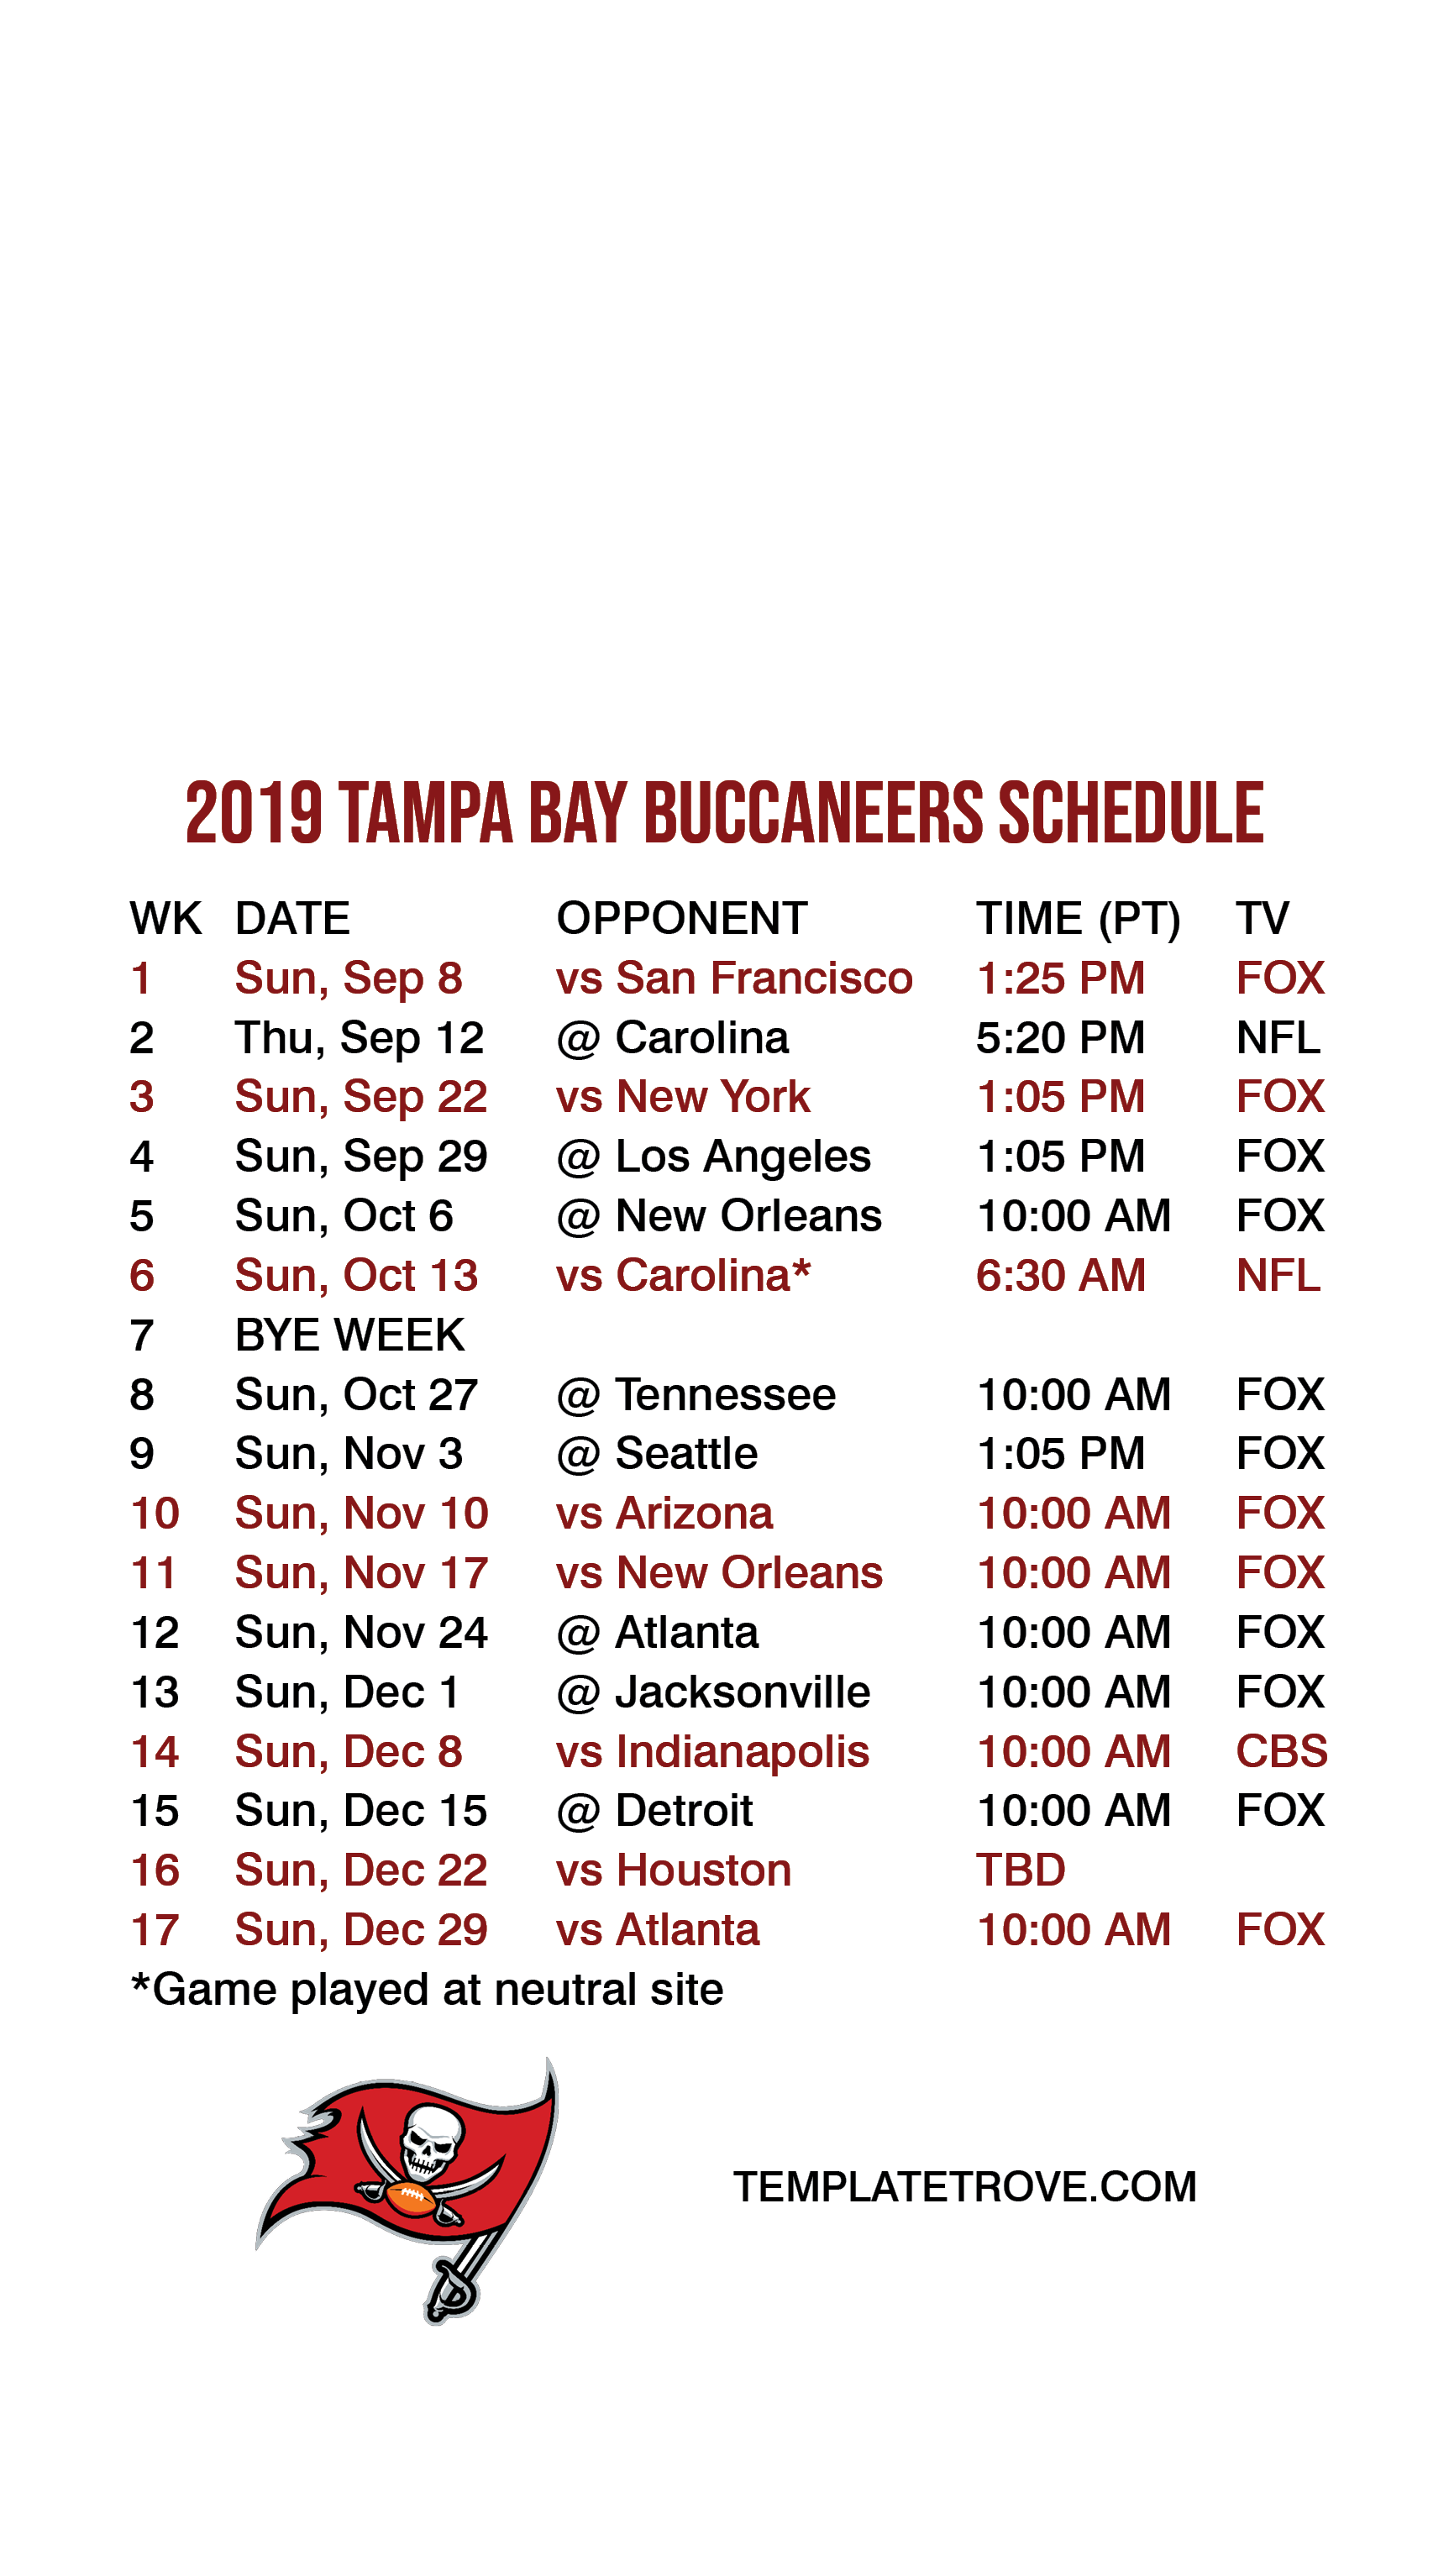 2019-2020 Tampa Bay Buccaneers Lock Screen Schedule for iPhone 6-7-8 Plus